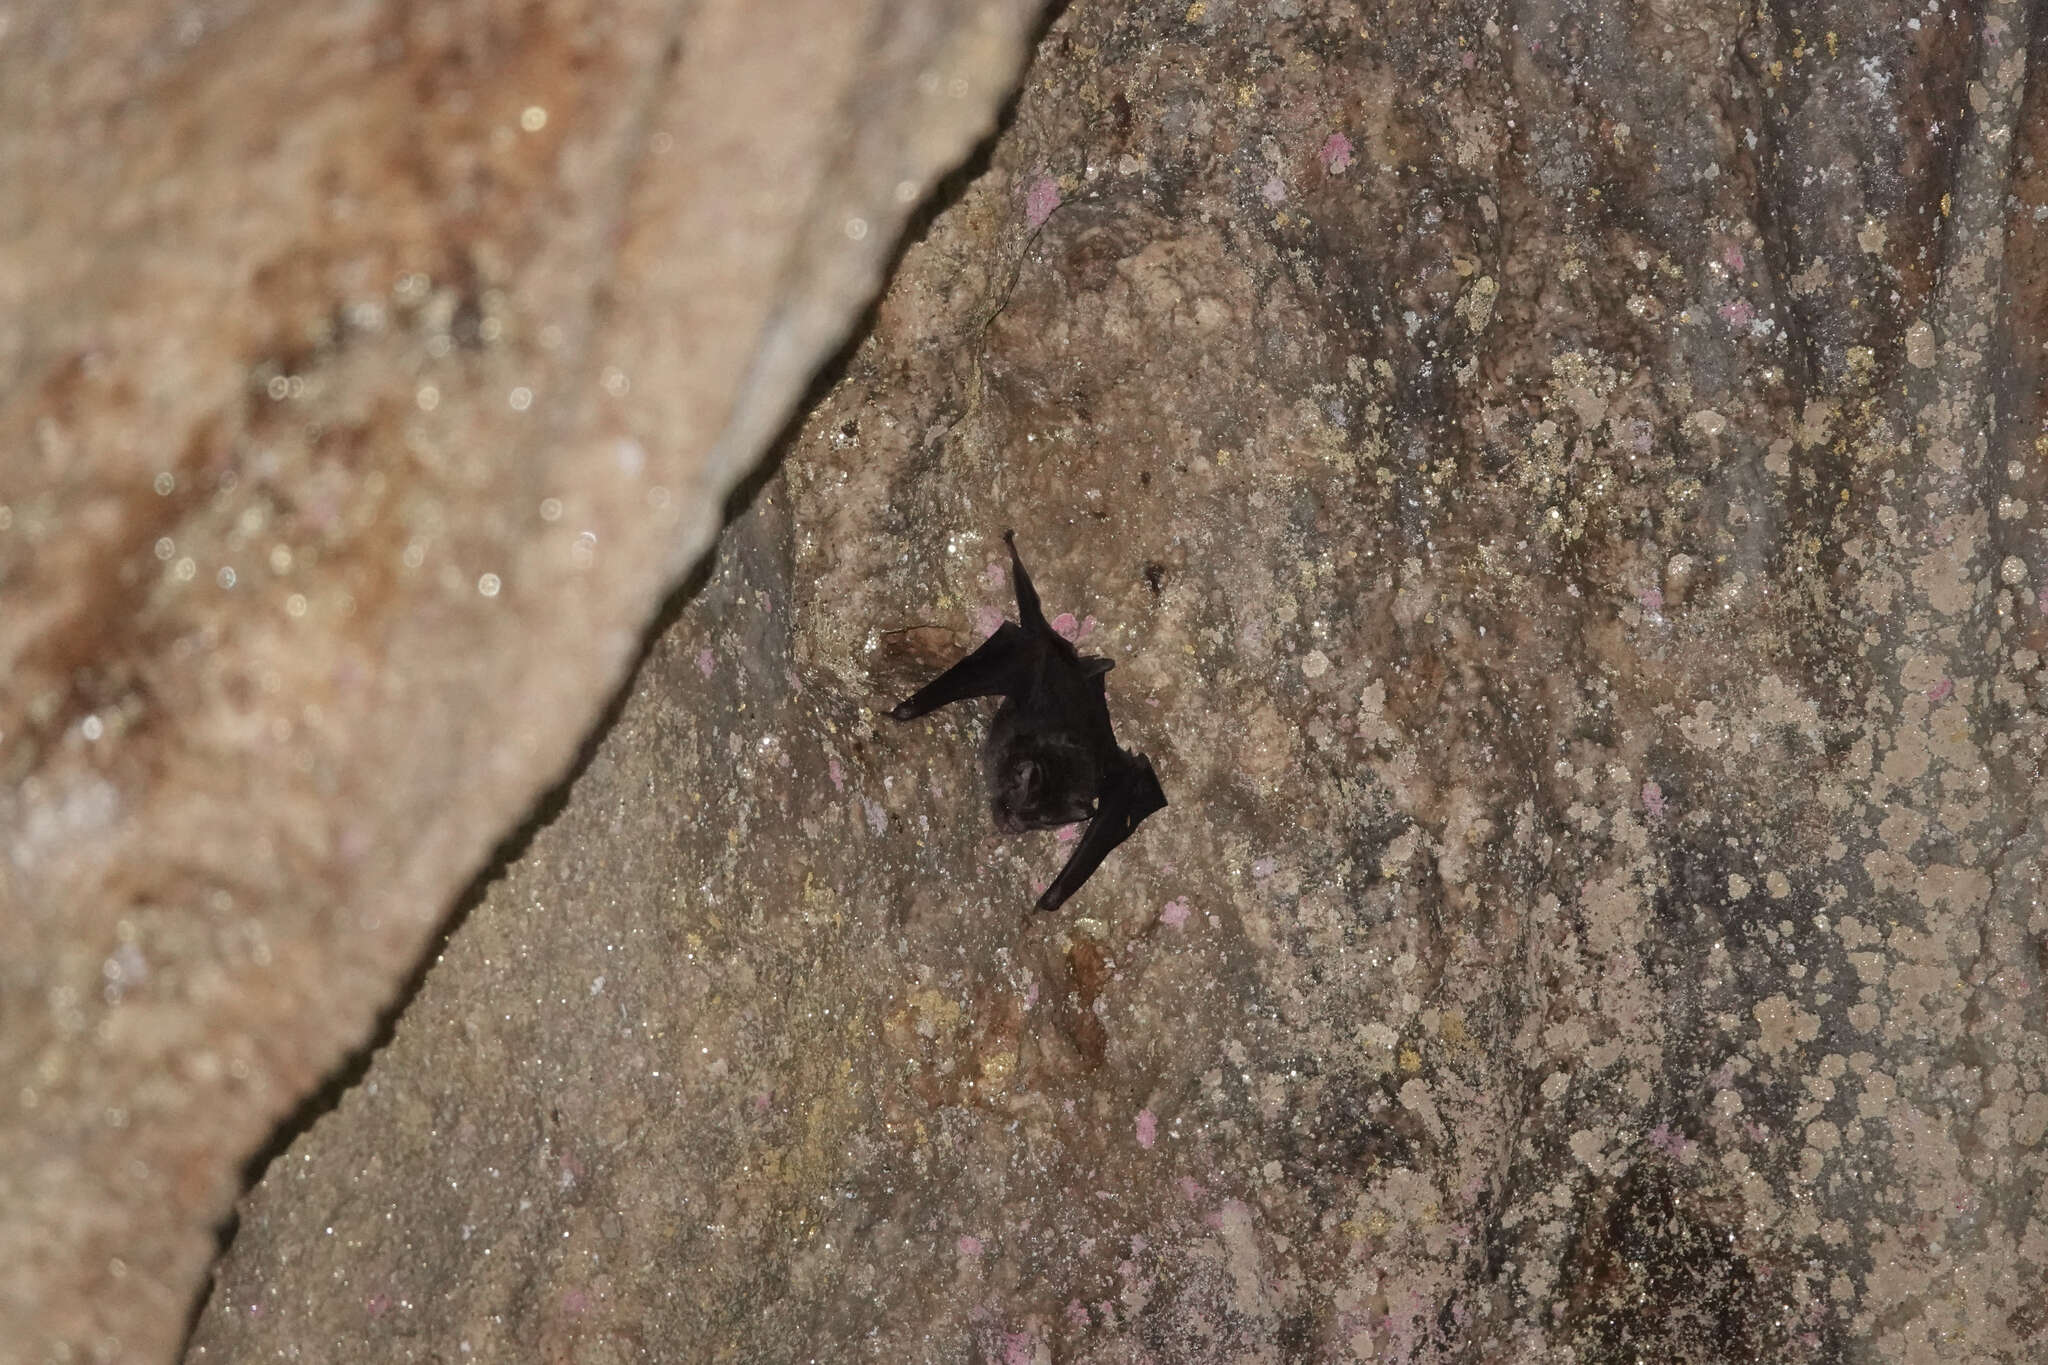 Image of Biak Leaf-nosed Bat